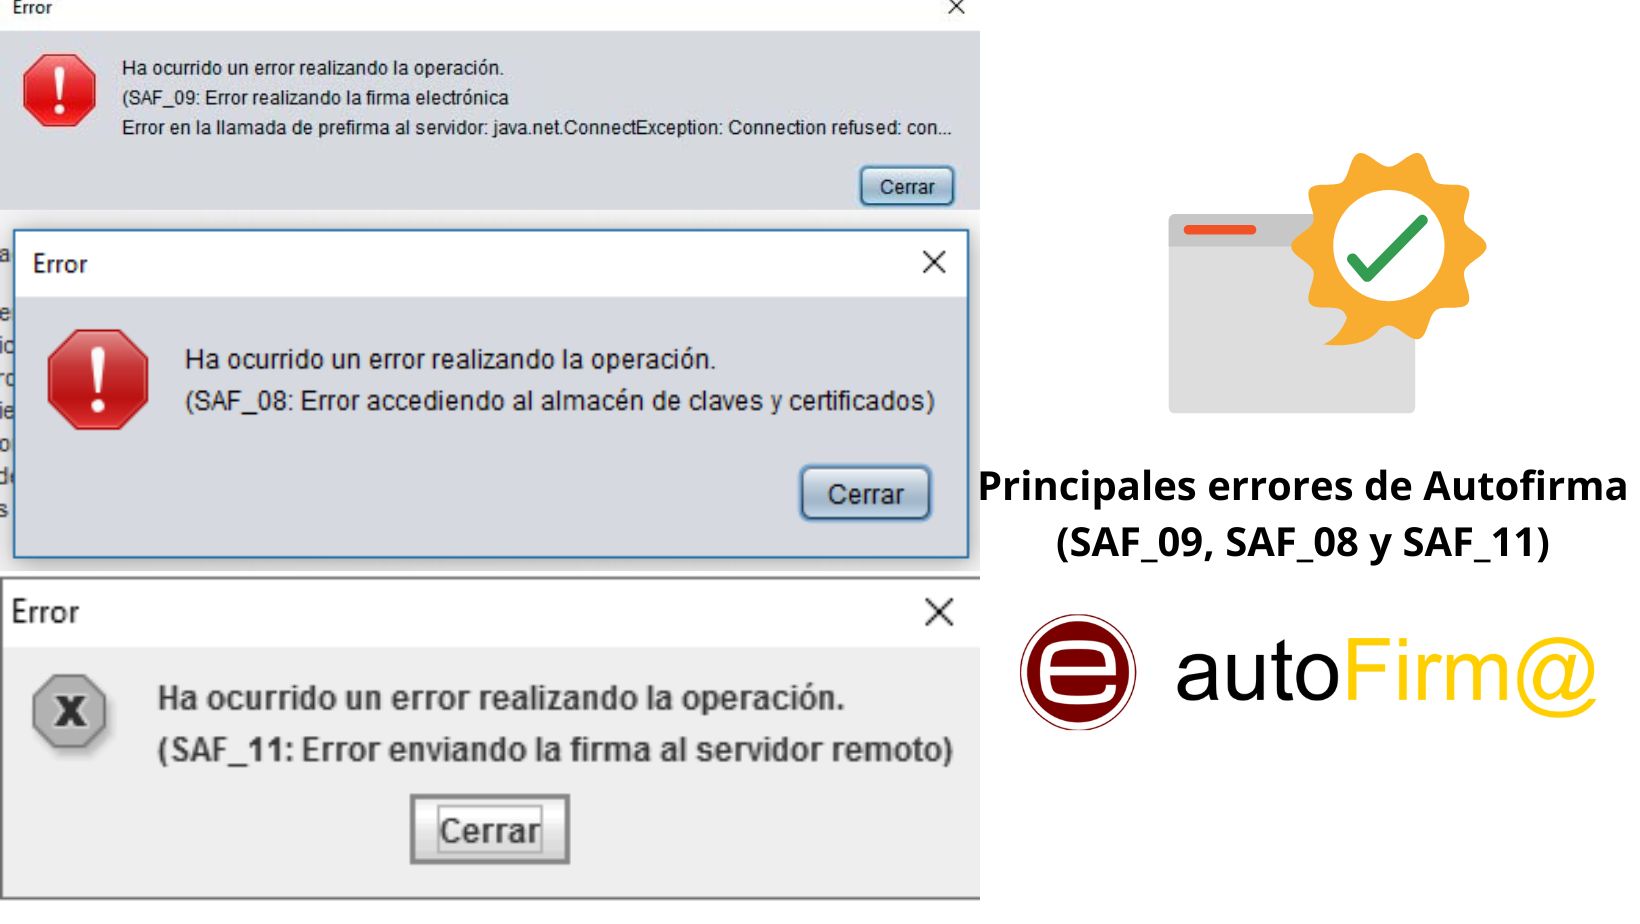 Principales errores de Autofirma (SAF_09, SAF_08 y SAF_11)